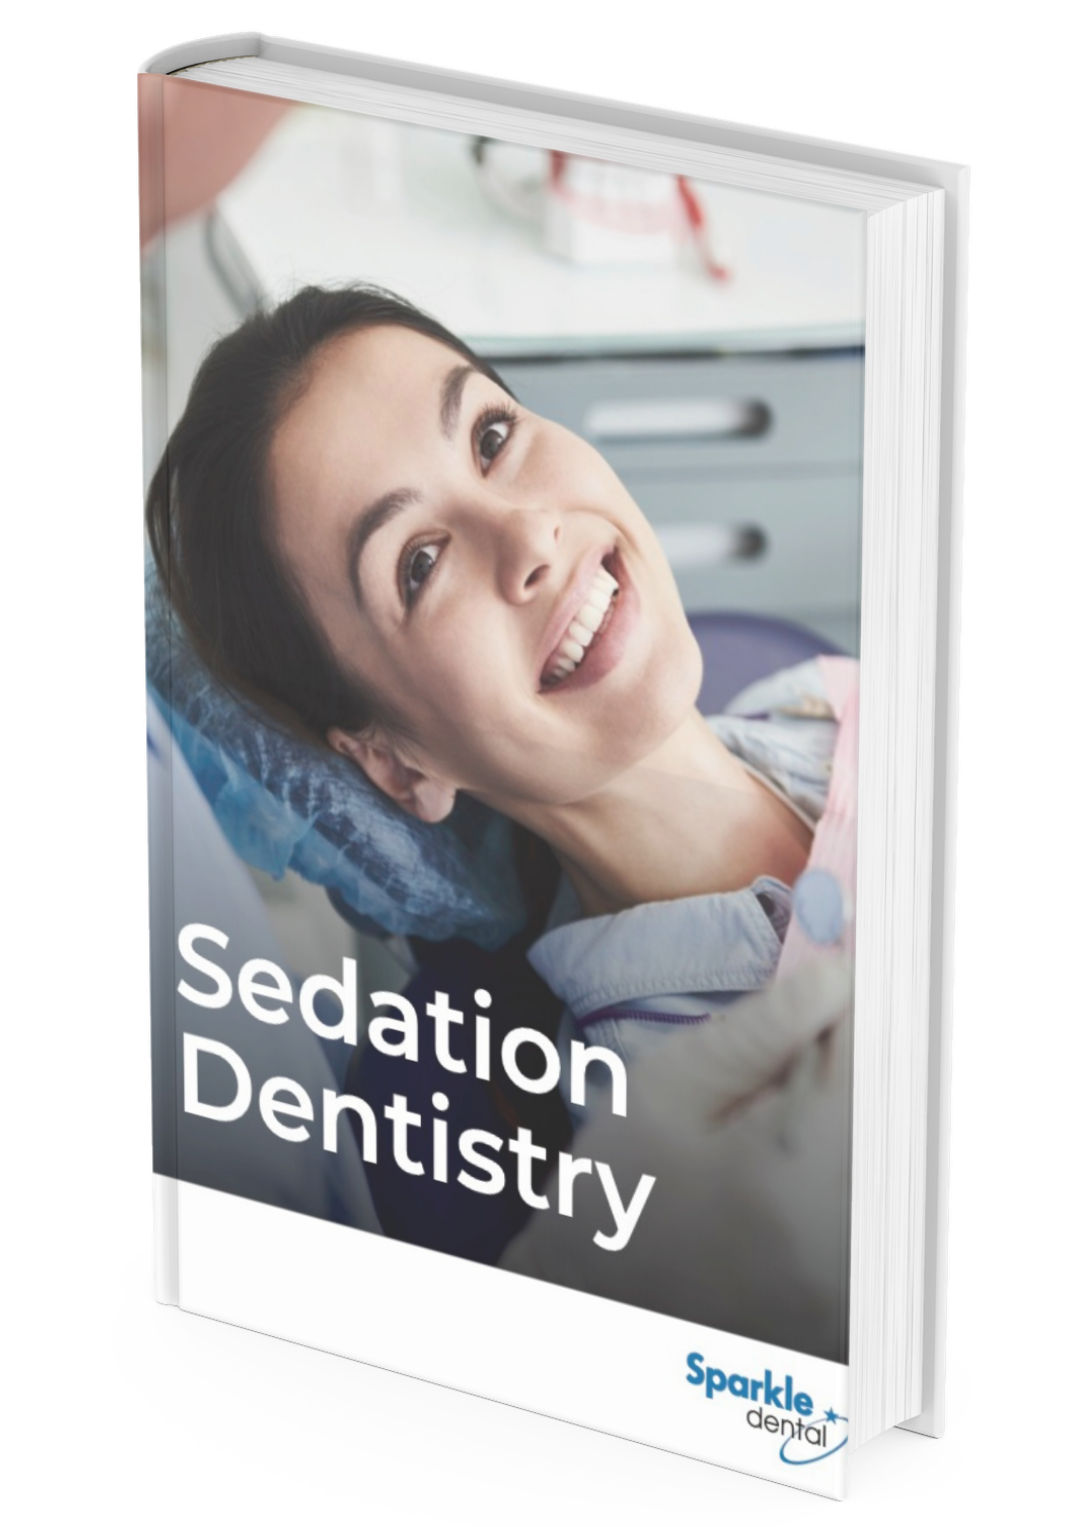 Sedation Dentistry Ebook